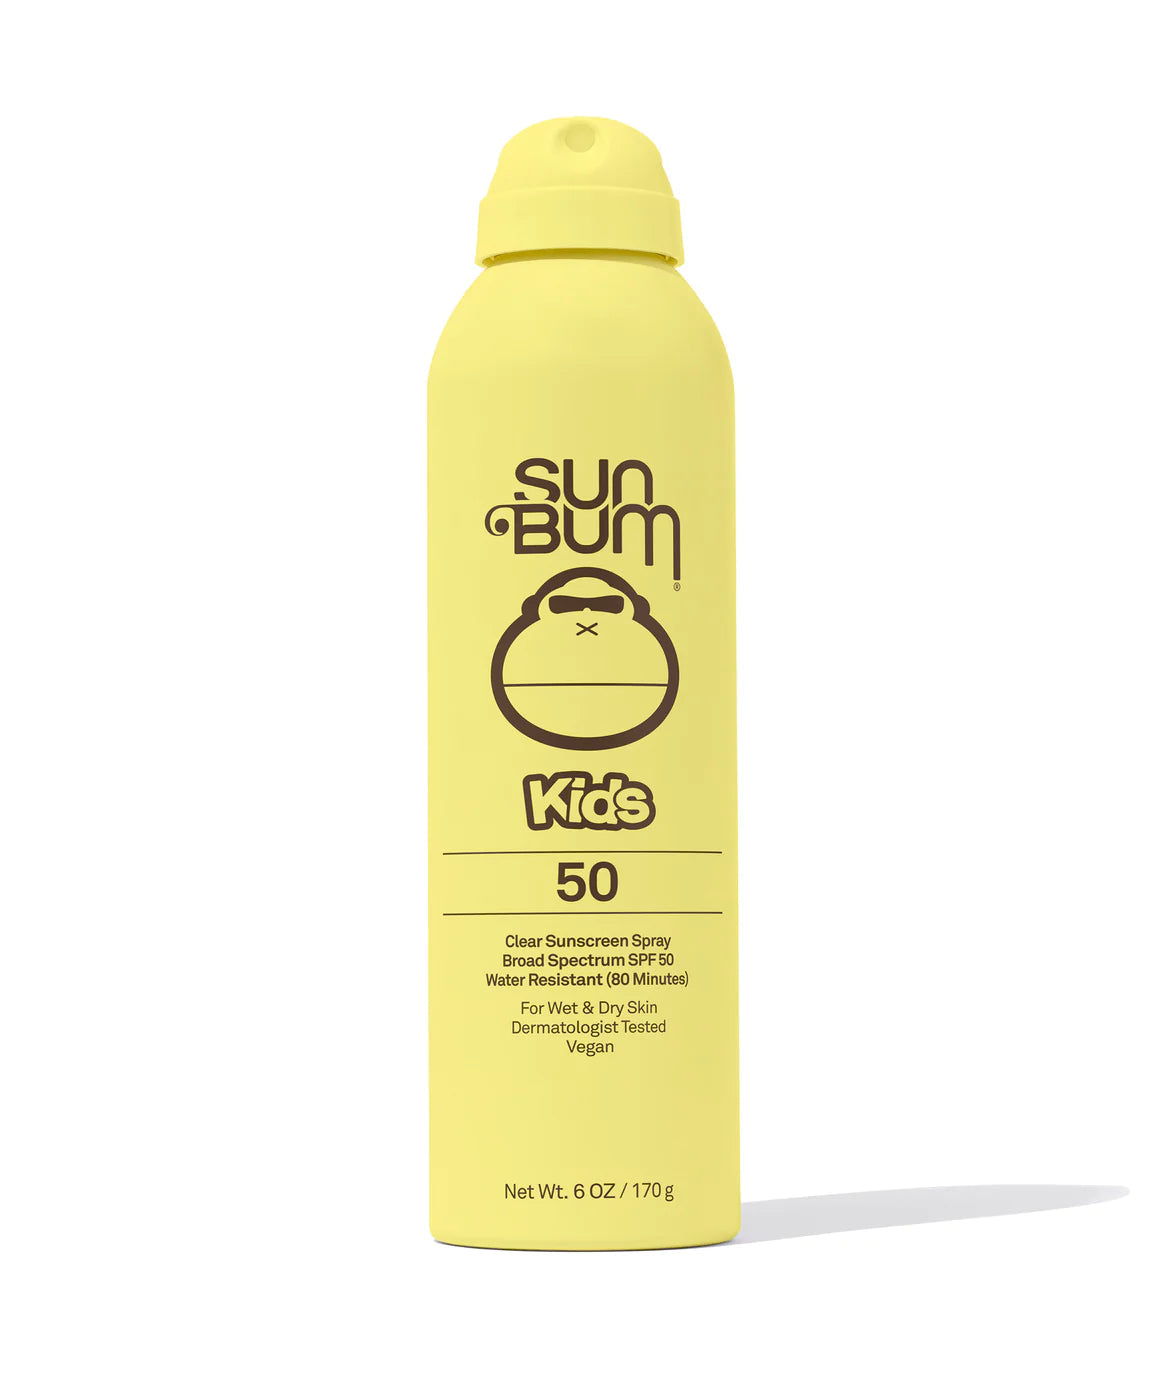 SUNBUM Kids SPF 50 Clear Sunscreen Spray Default SUN BUM 